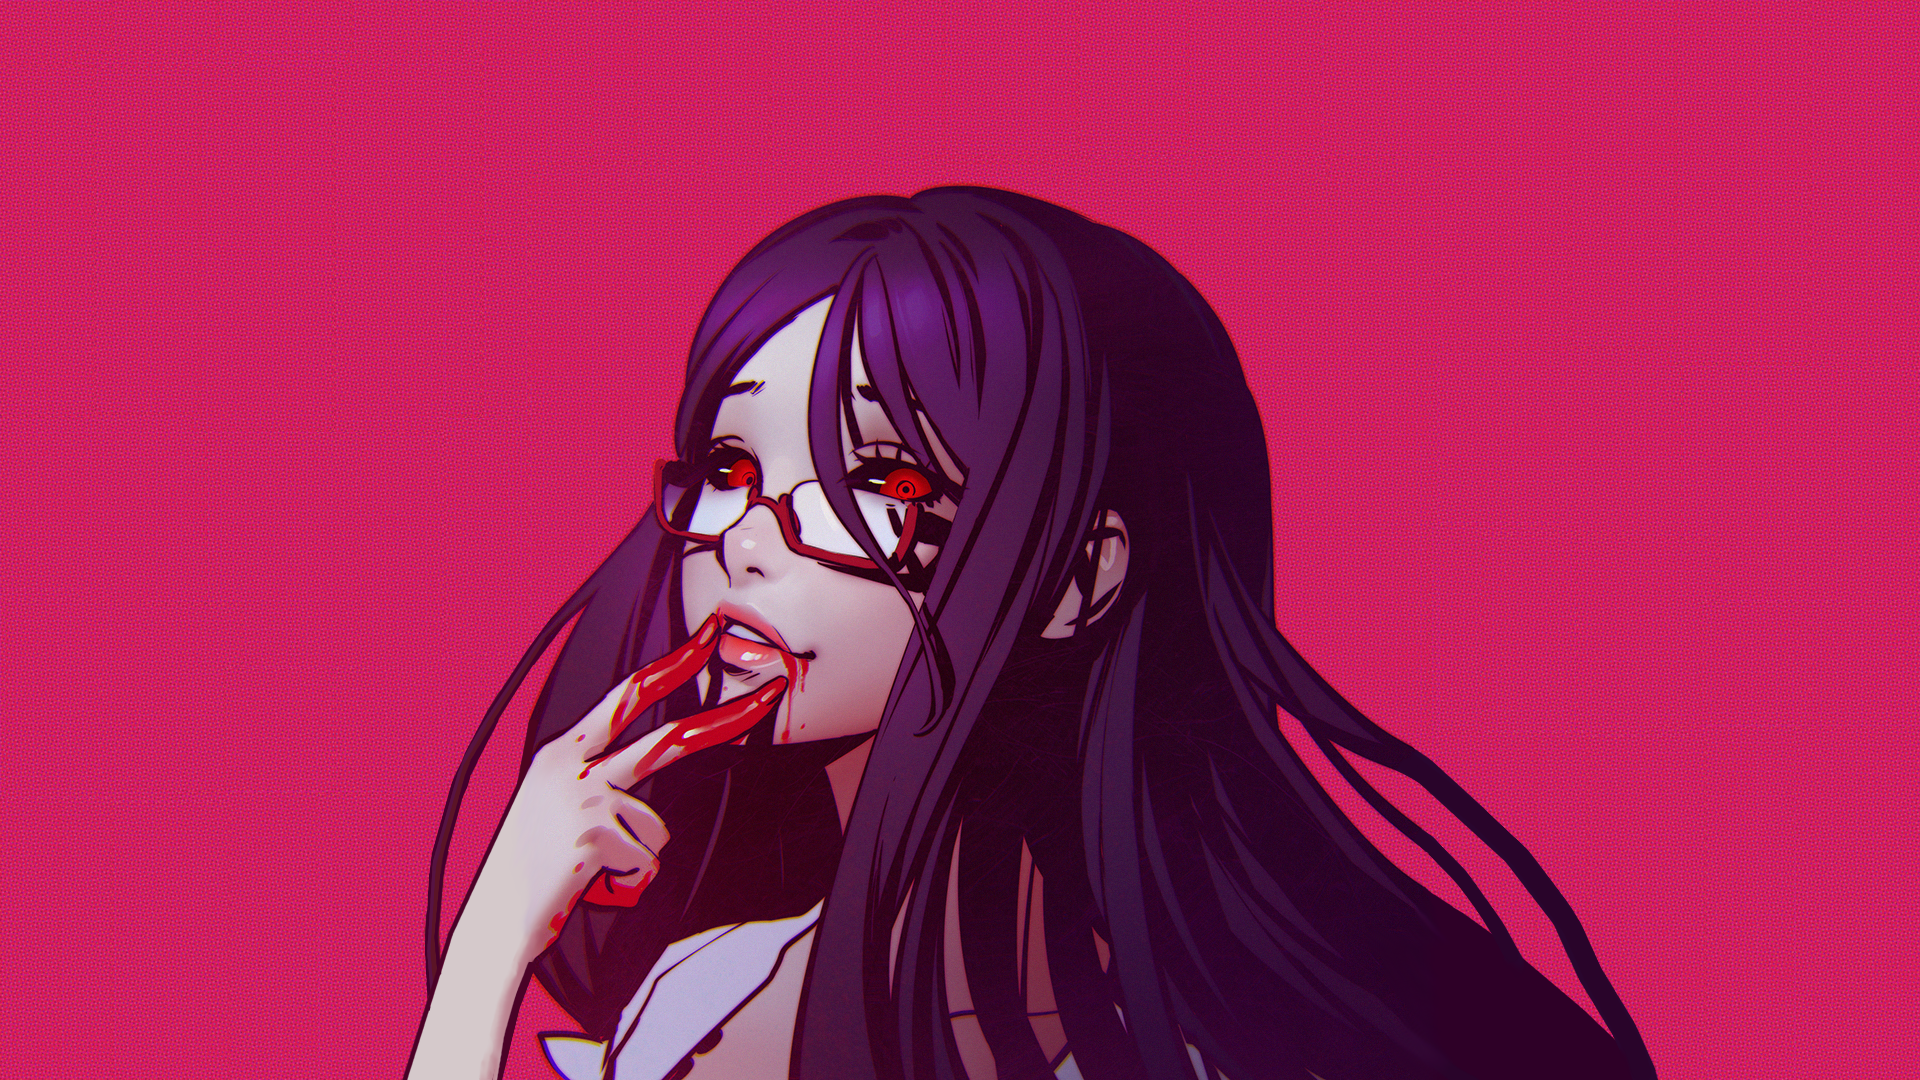 Digital Art Fantasy Art Artwork Women Anime Girls Schoolgirl Ghoul Horror Glasses Red Eyes Violet Ha 1920x1080